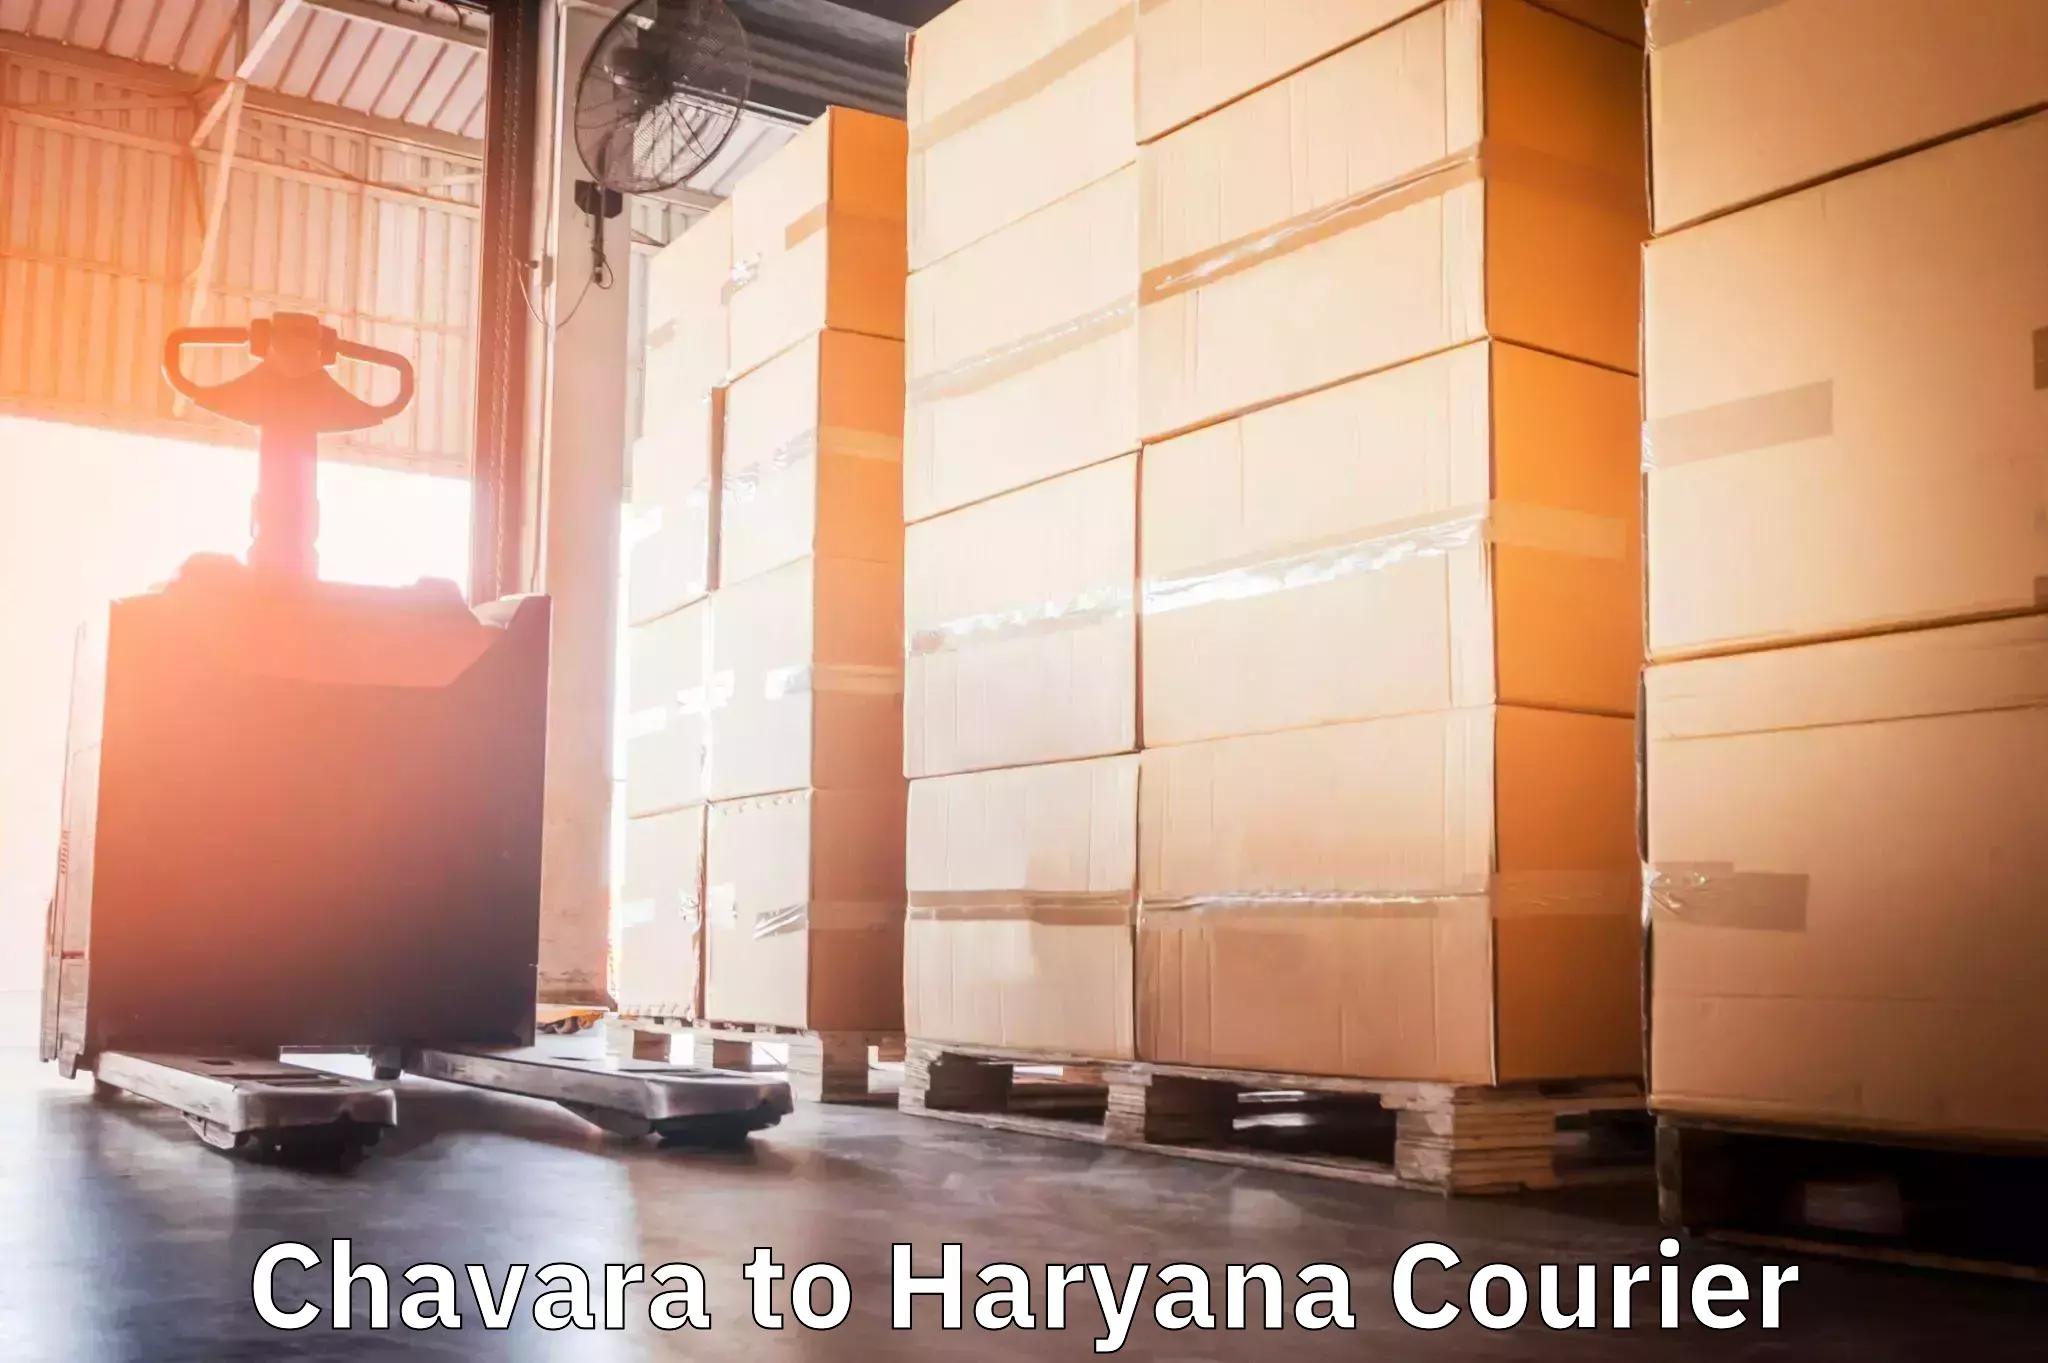 Efficient parcel service Chavara to Kurukshetra